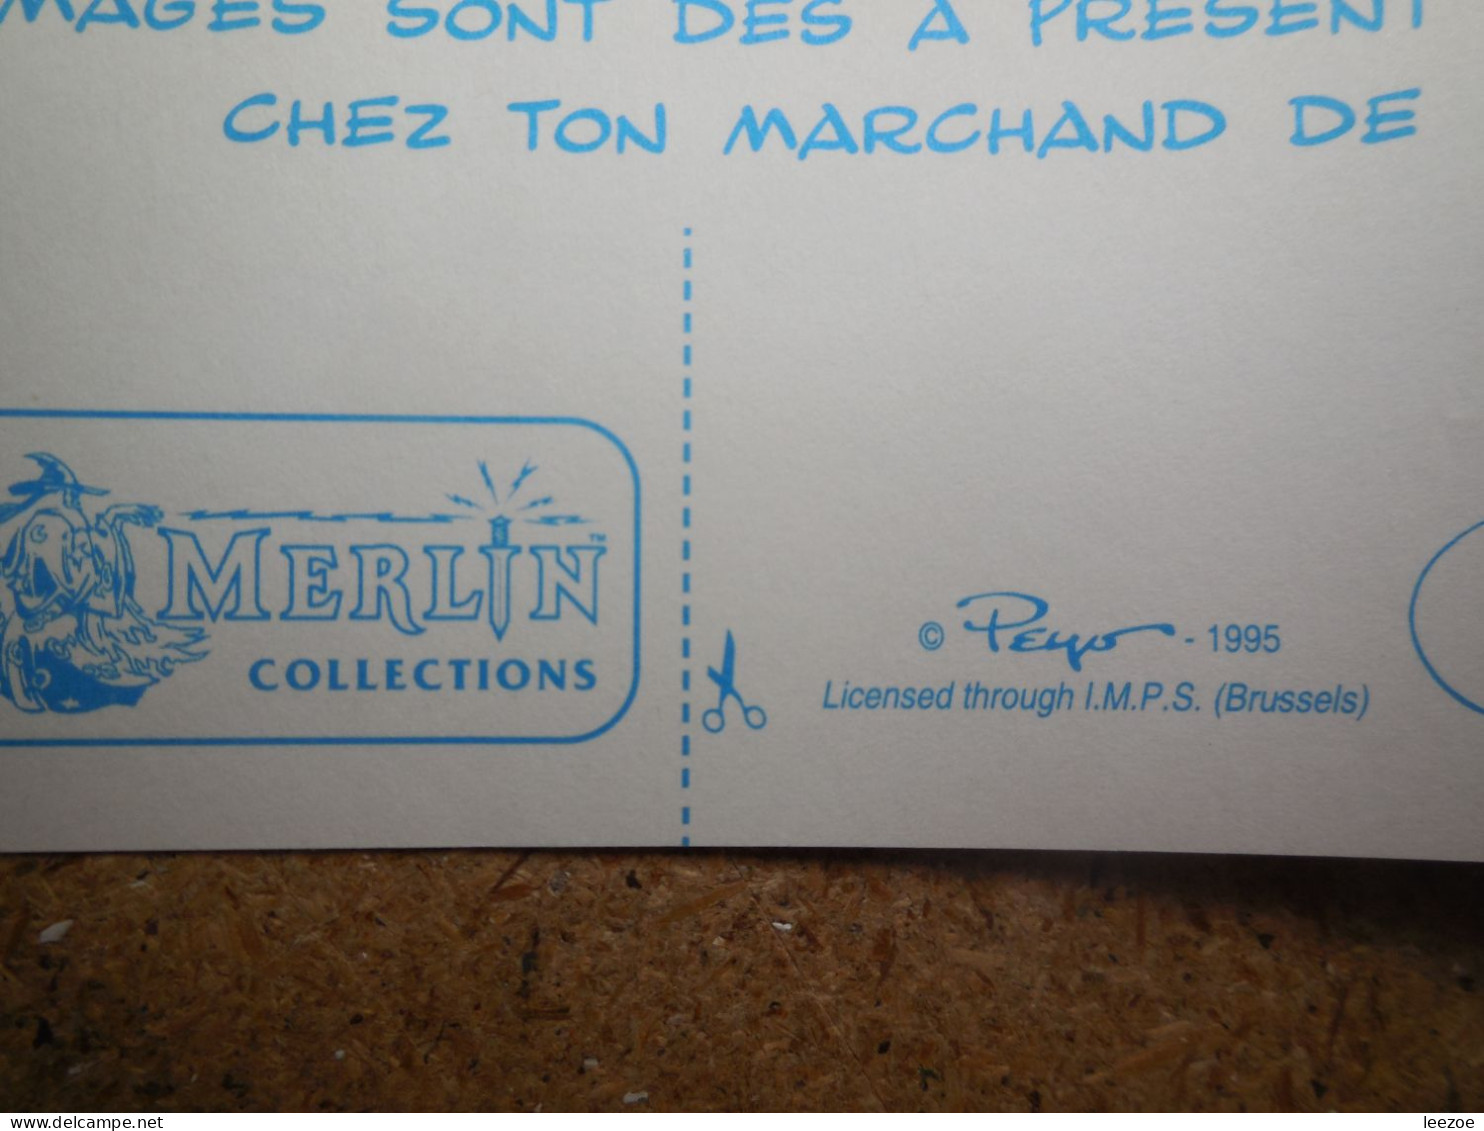 Objets Dérivés BD Les Schtroumpfs, DE SMURFEN, Autocollants, Stickers Peyo 1995 Par Merlin Collection, I.M.P.S BRUSSELS. - Autocollants